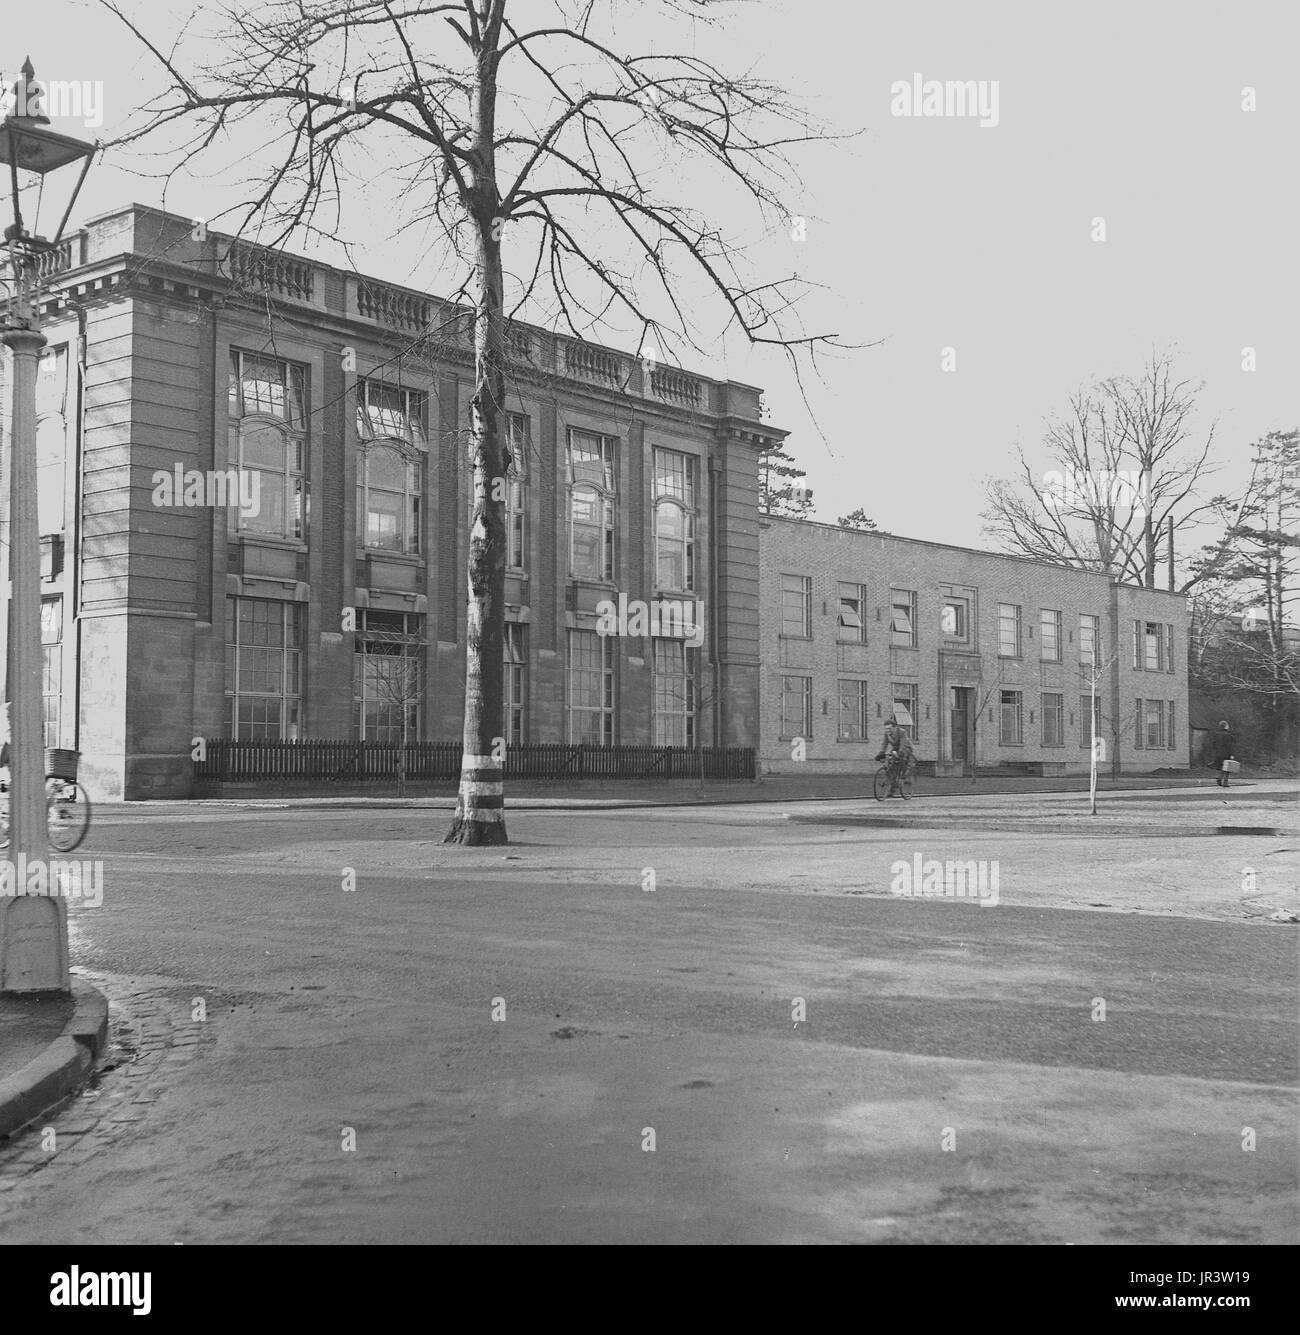 1948, histórica, Vista exterior del edificio en parques del sur Rd, Oxford, vivienda el Dyson Perrins laboratorio, que fue el principal centro de investigación en química orgánica en la famosa universidad de Oxford, Oxford, Inglaterra, Reino Unido. Foto de stock